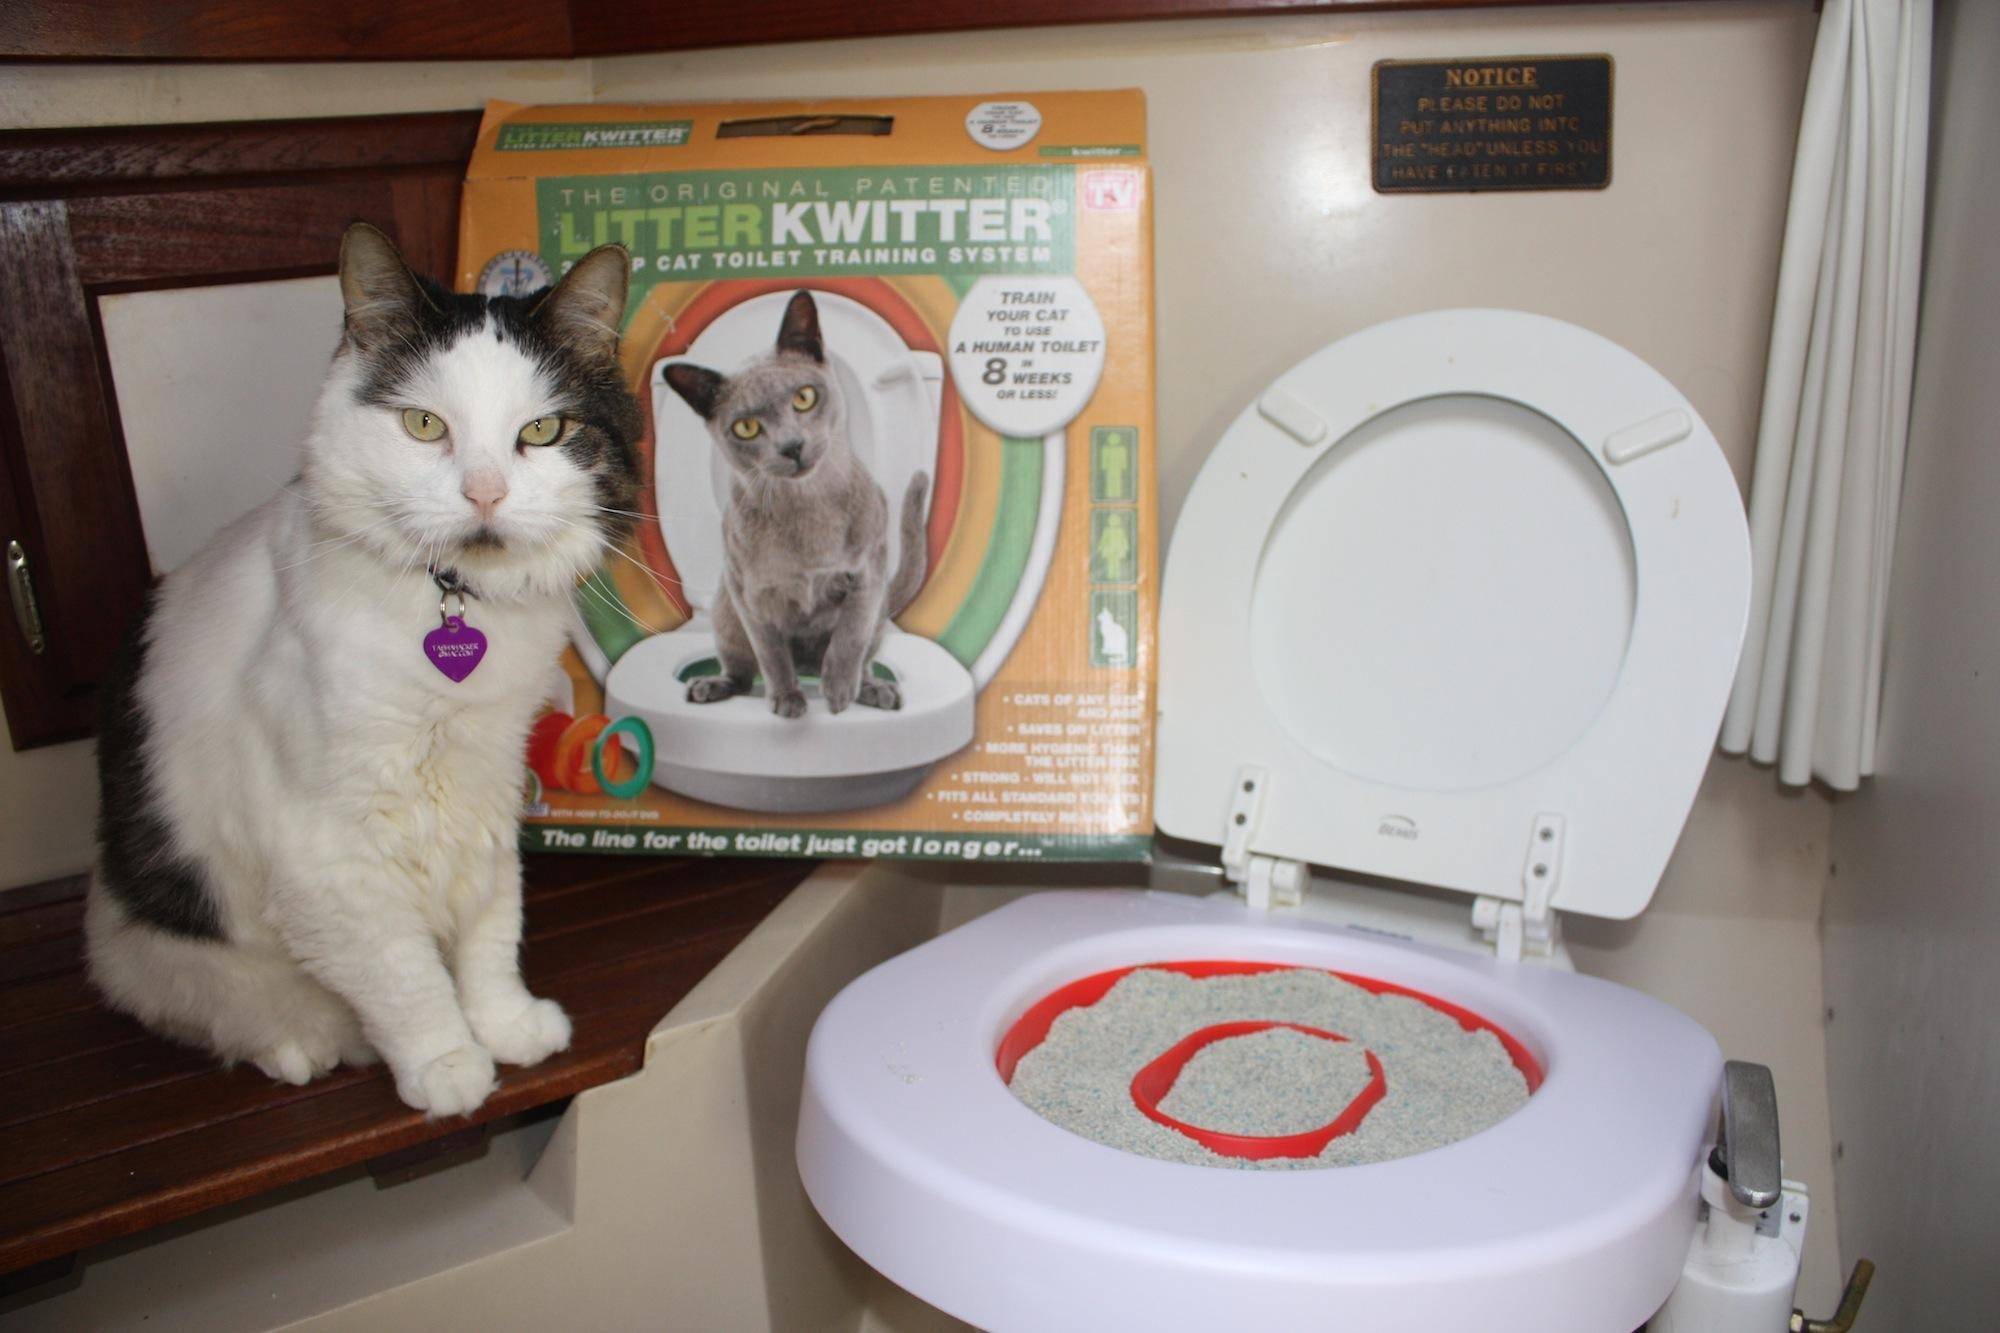 Как приучить кота к унитазу: практические советы и рекомендации заводчиков, как научить кота ходить в туалет после лотка